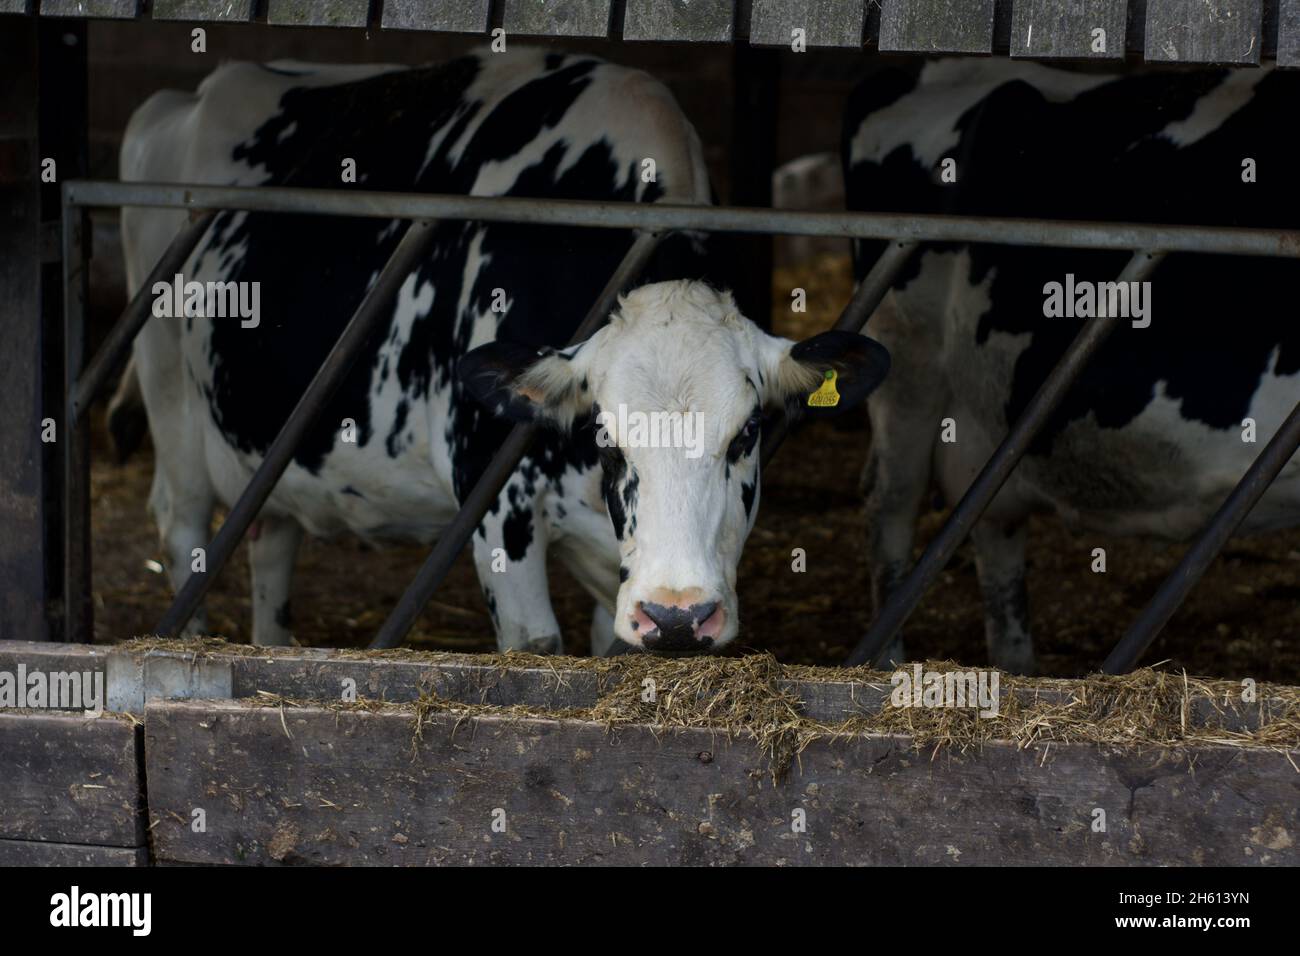 Die Kuh, die ihren Kopf durch ein klappbares Tor zur Futterbarriere auf einem Bauernhof hält und nach Heu/Stroh greift Stockfoto